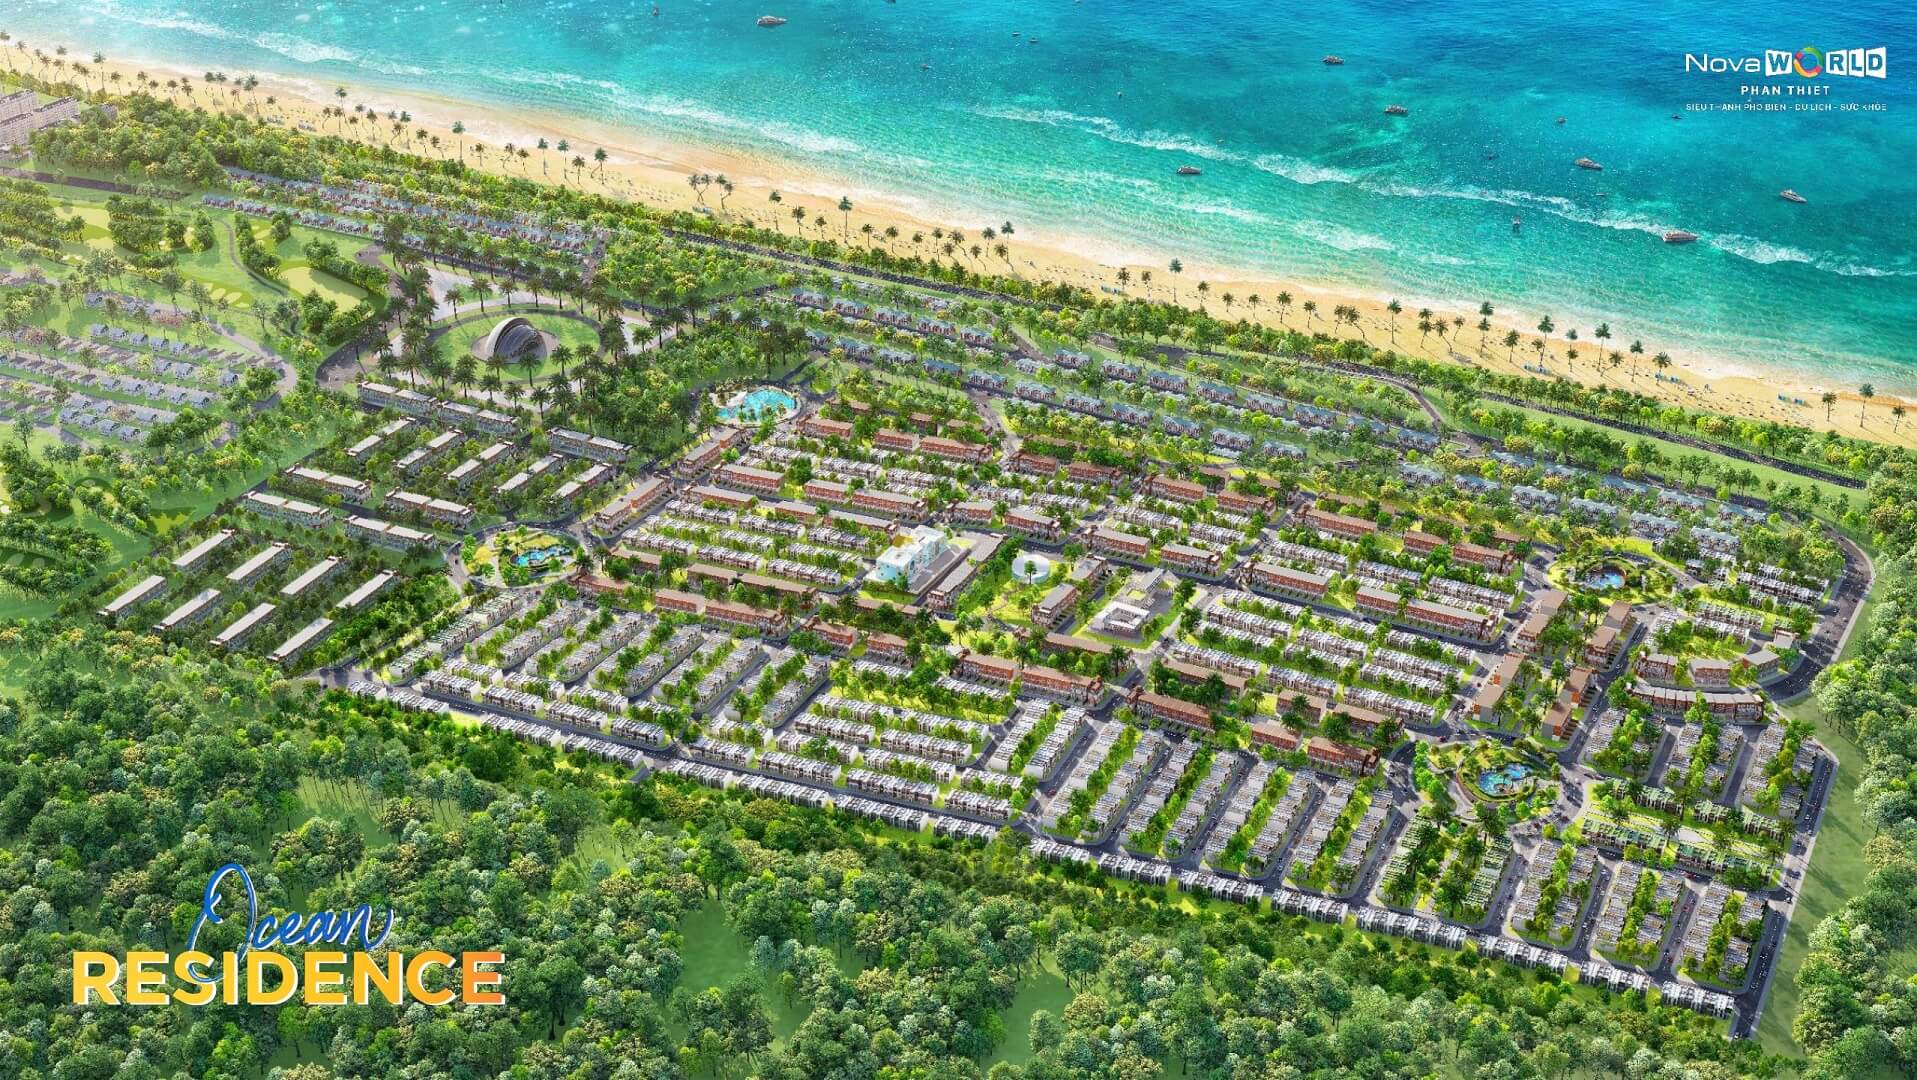 Ocean Residence Novaworld Phan Thiết